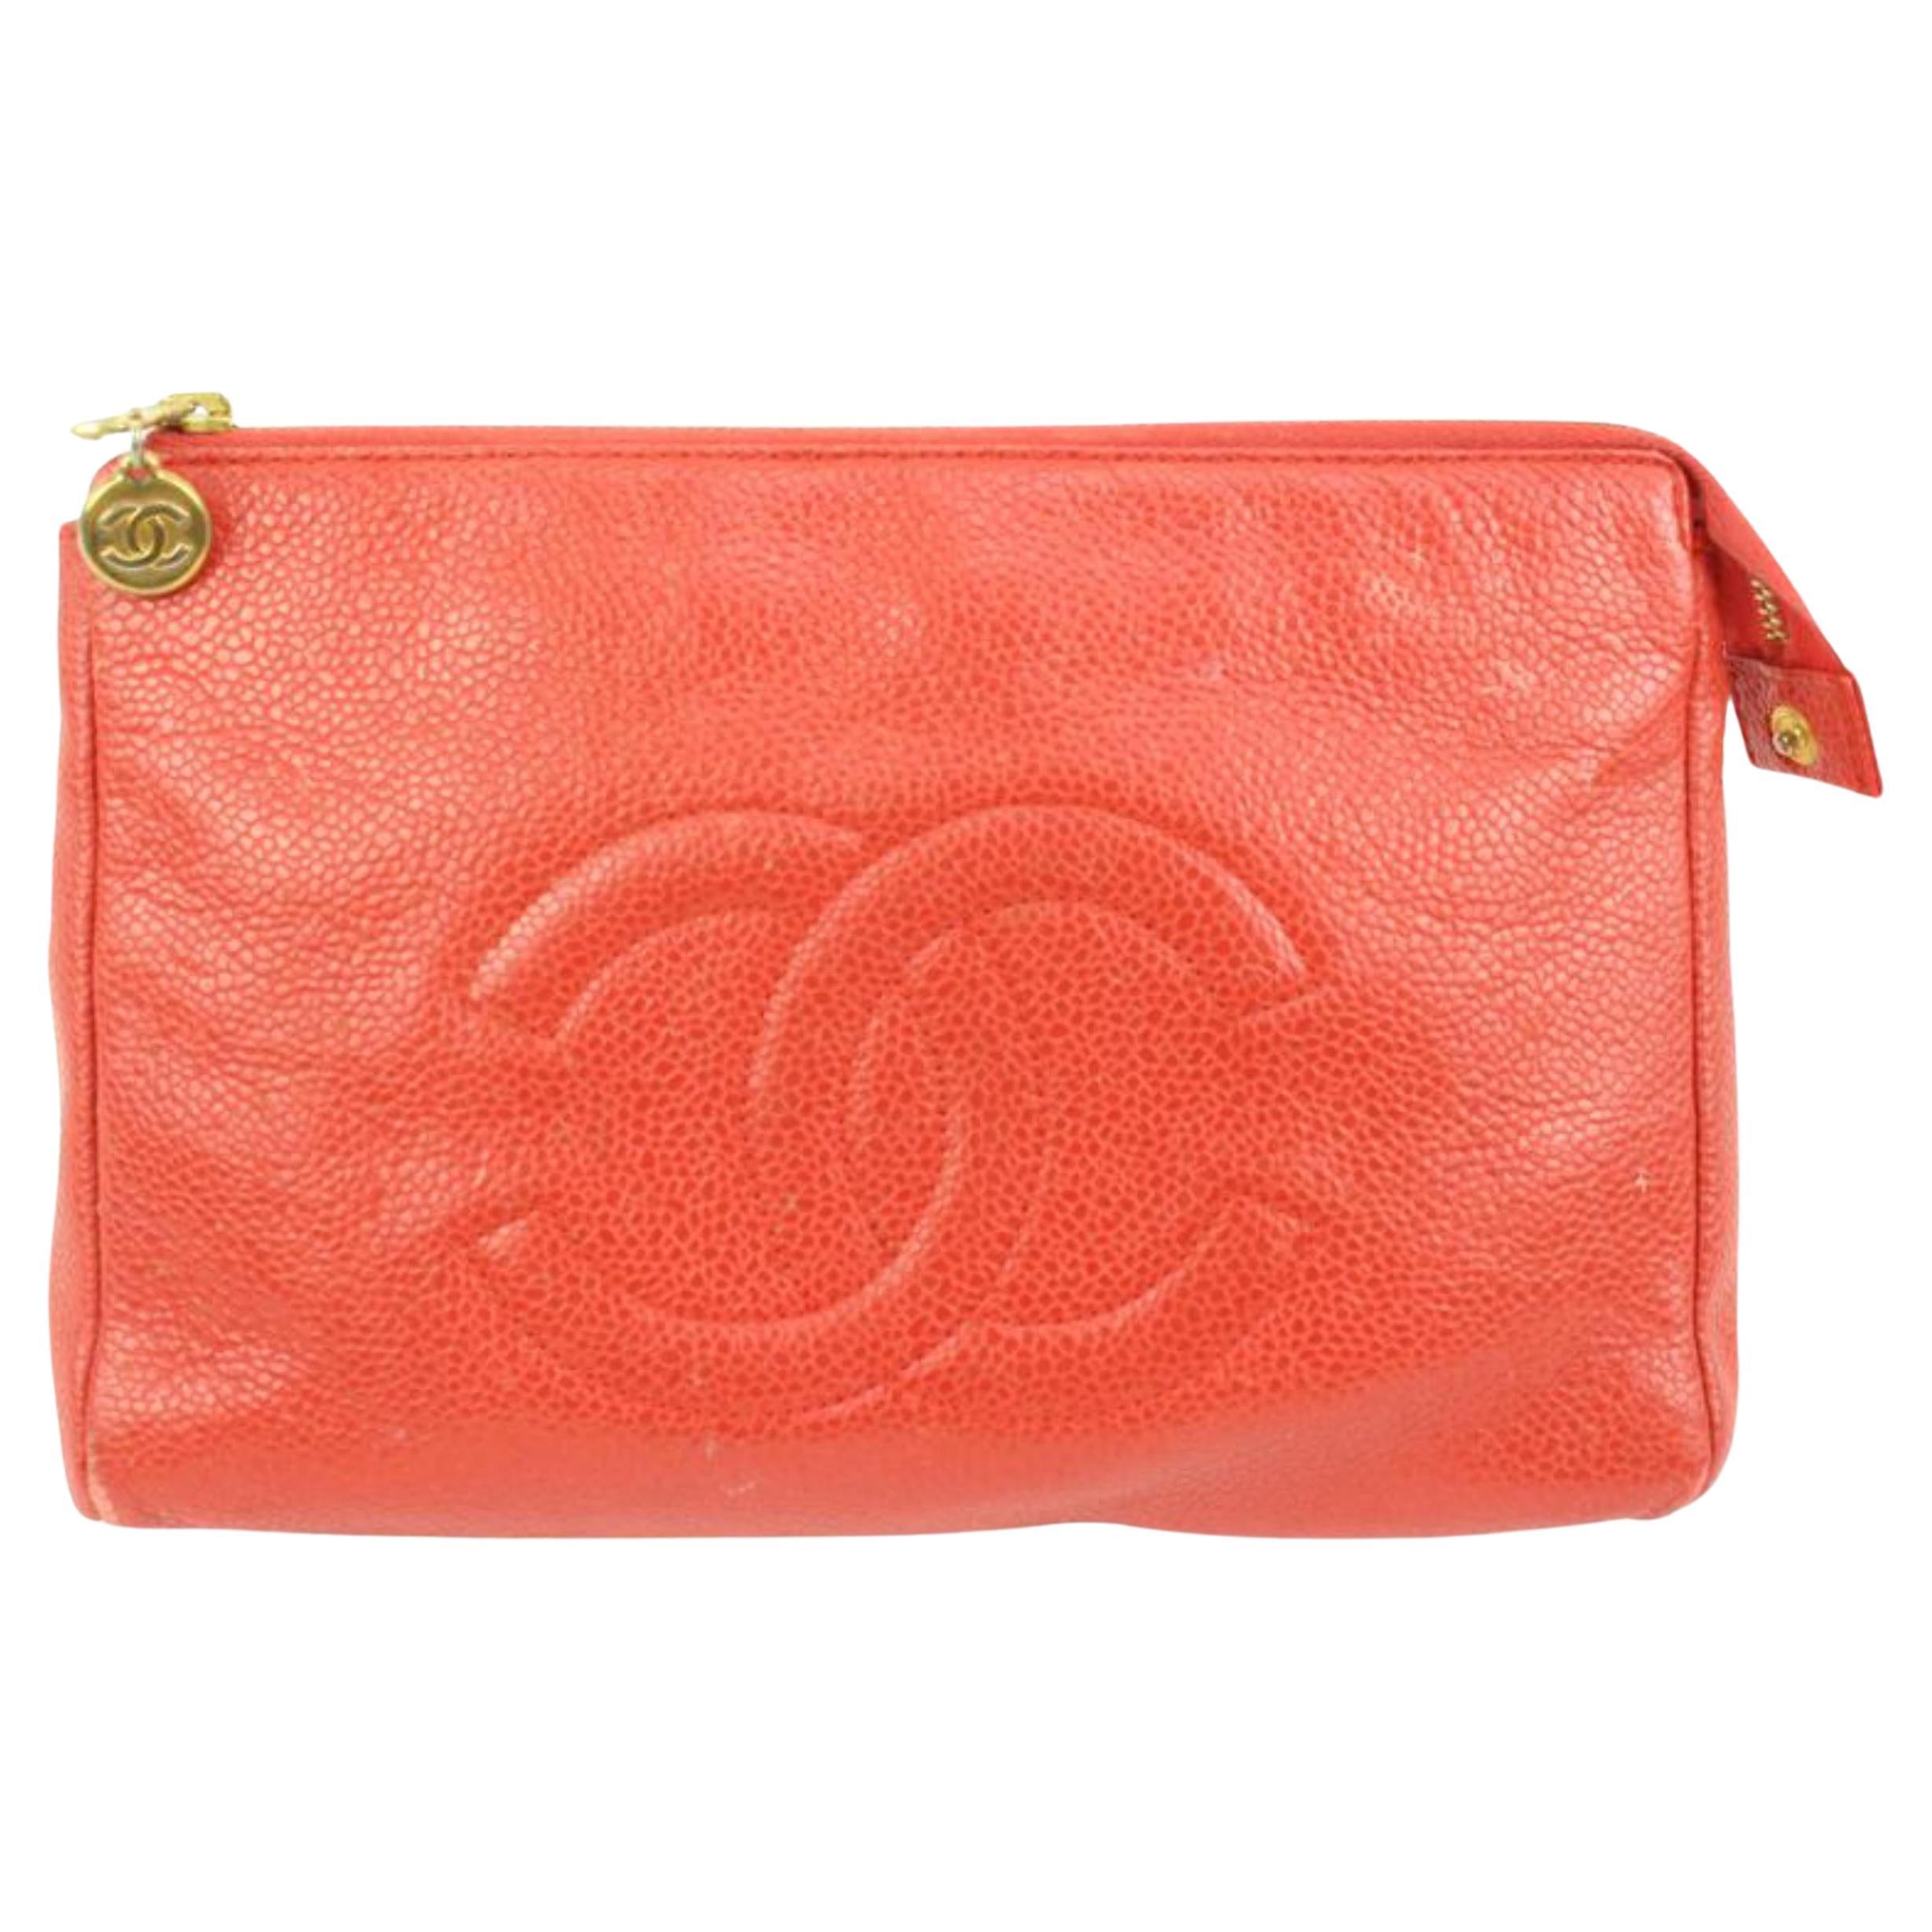 Chanel long wallet pink - Gem